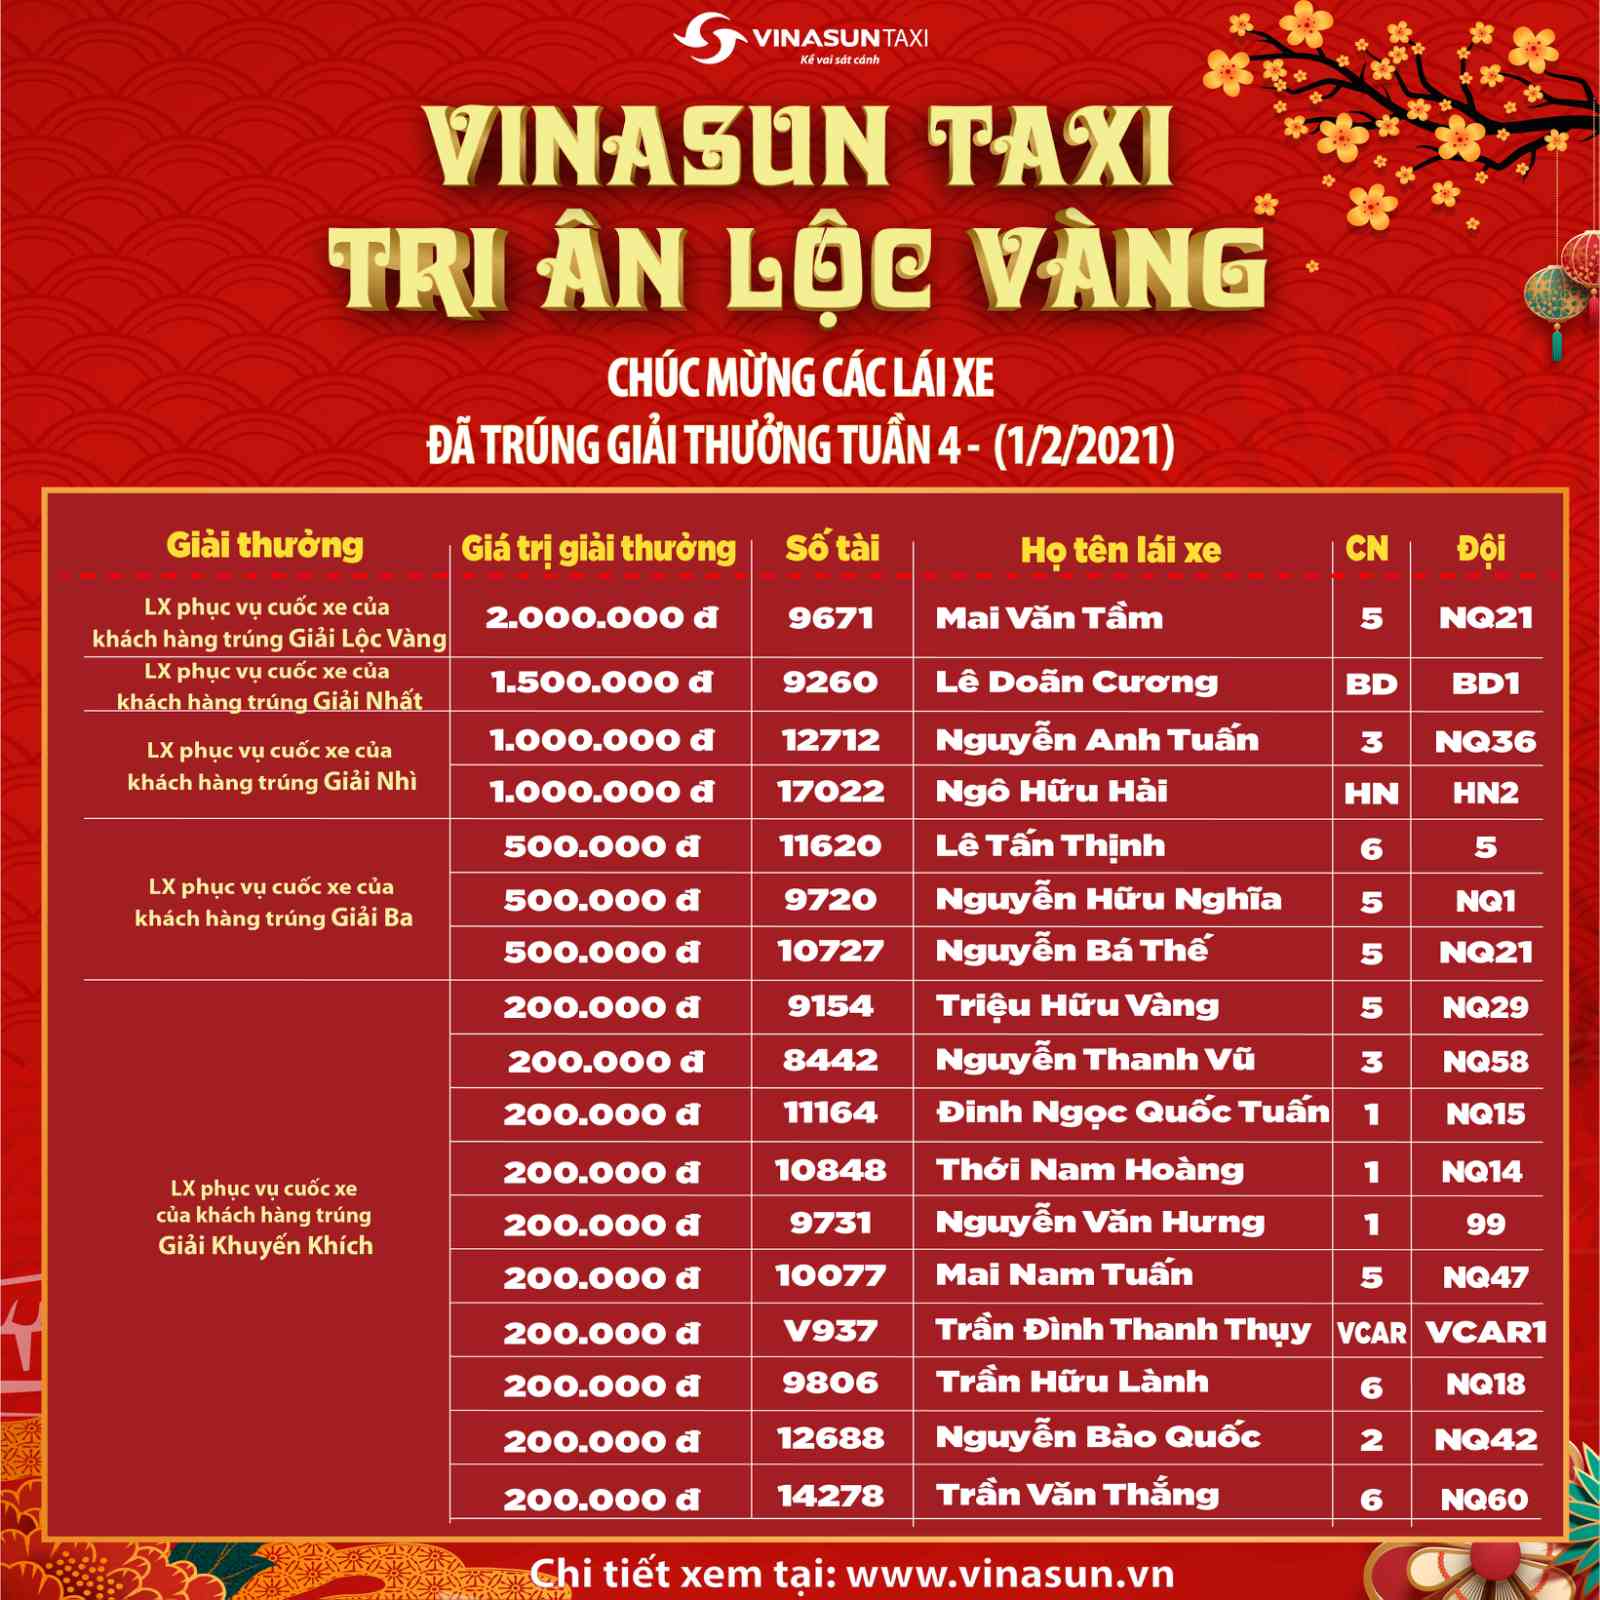 Kết quả Vinasun Taxi - Tri ân lộc vàng dành cho LÁI XE tuần 4